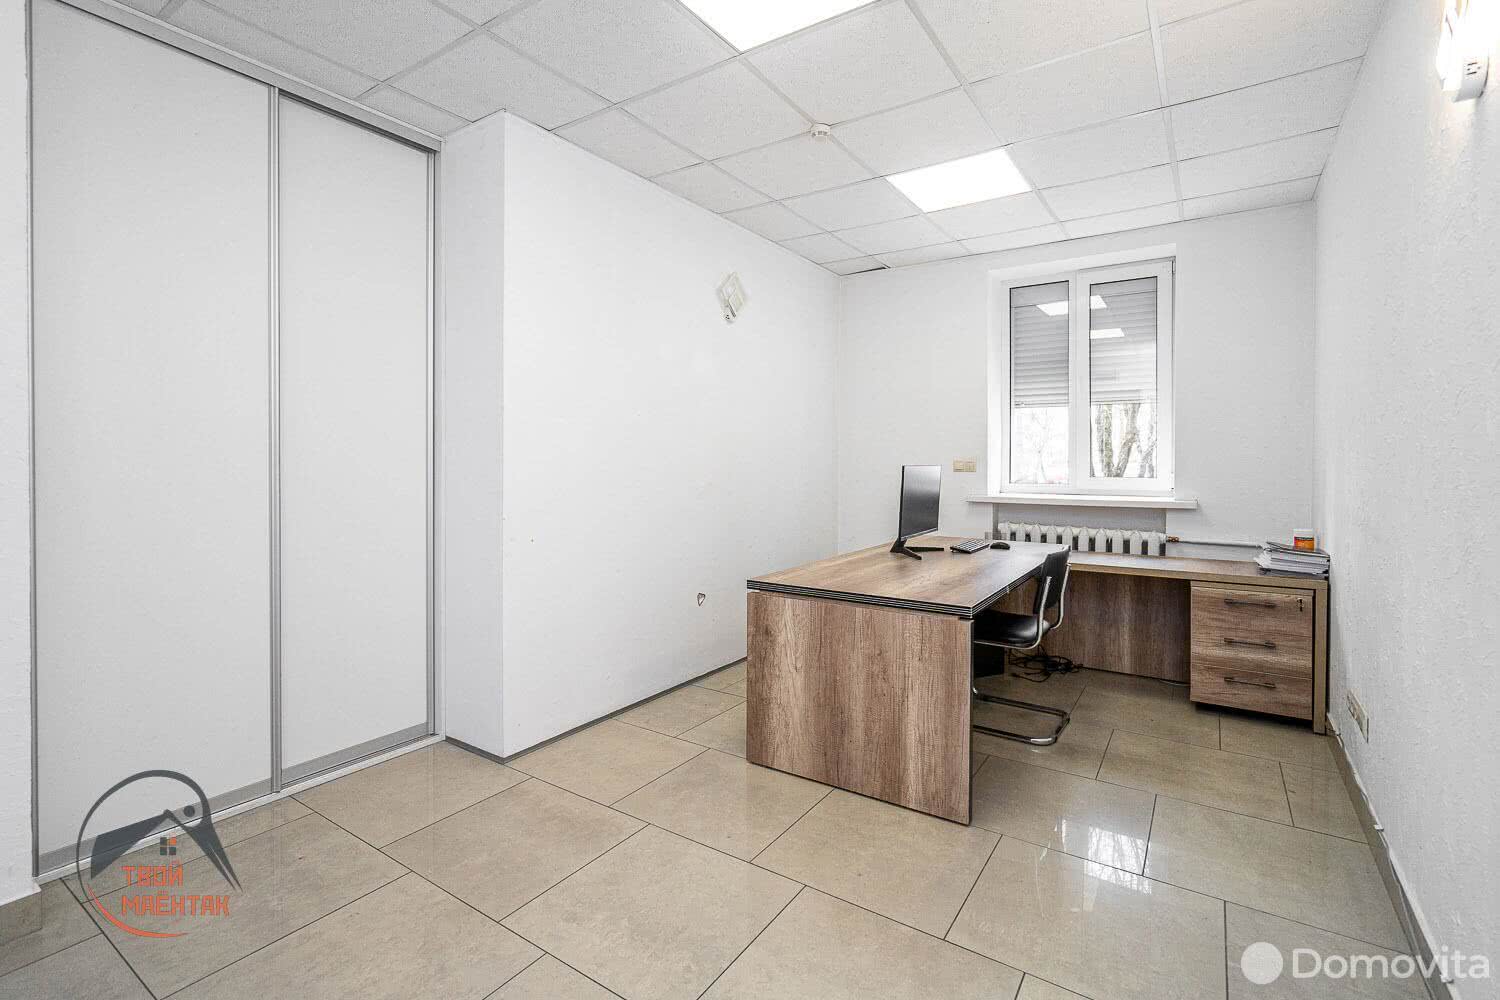 Снять офис на ул. Веры Хоружей, д. 5 в Минске, 1000BYN, код 11922 - фото 1